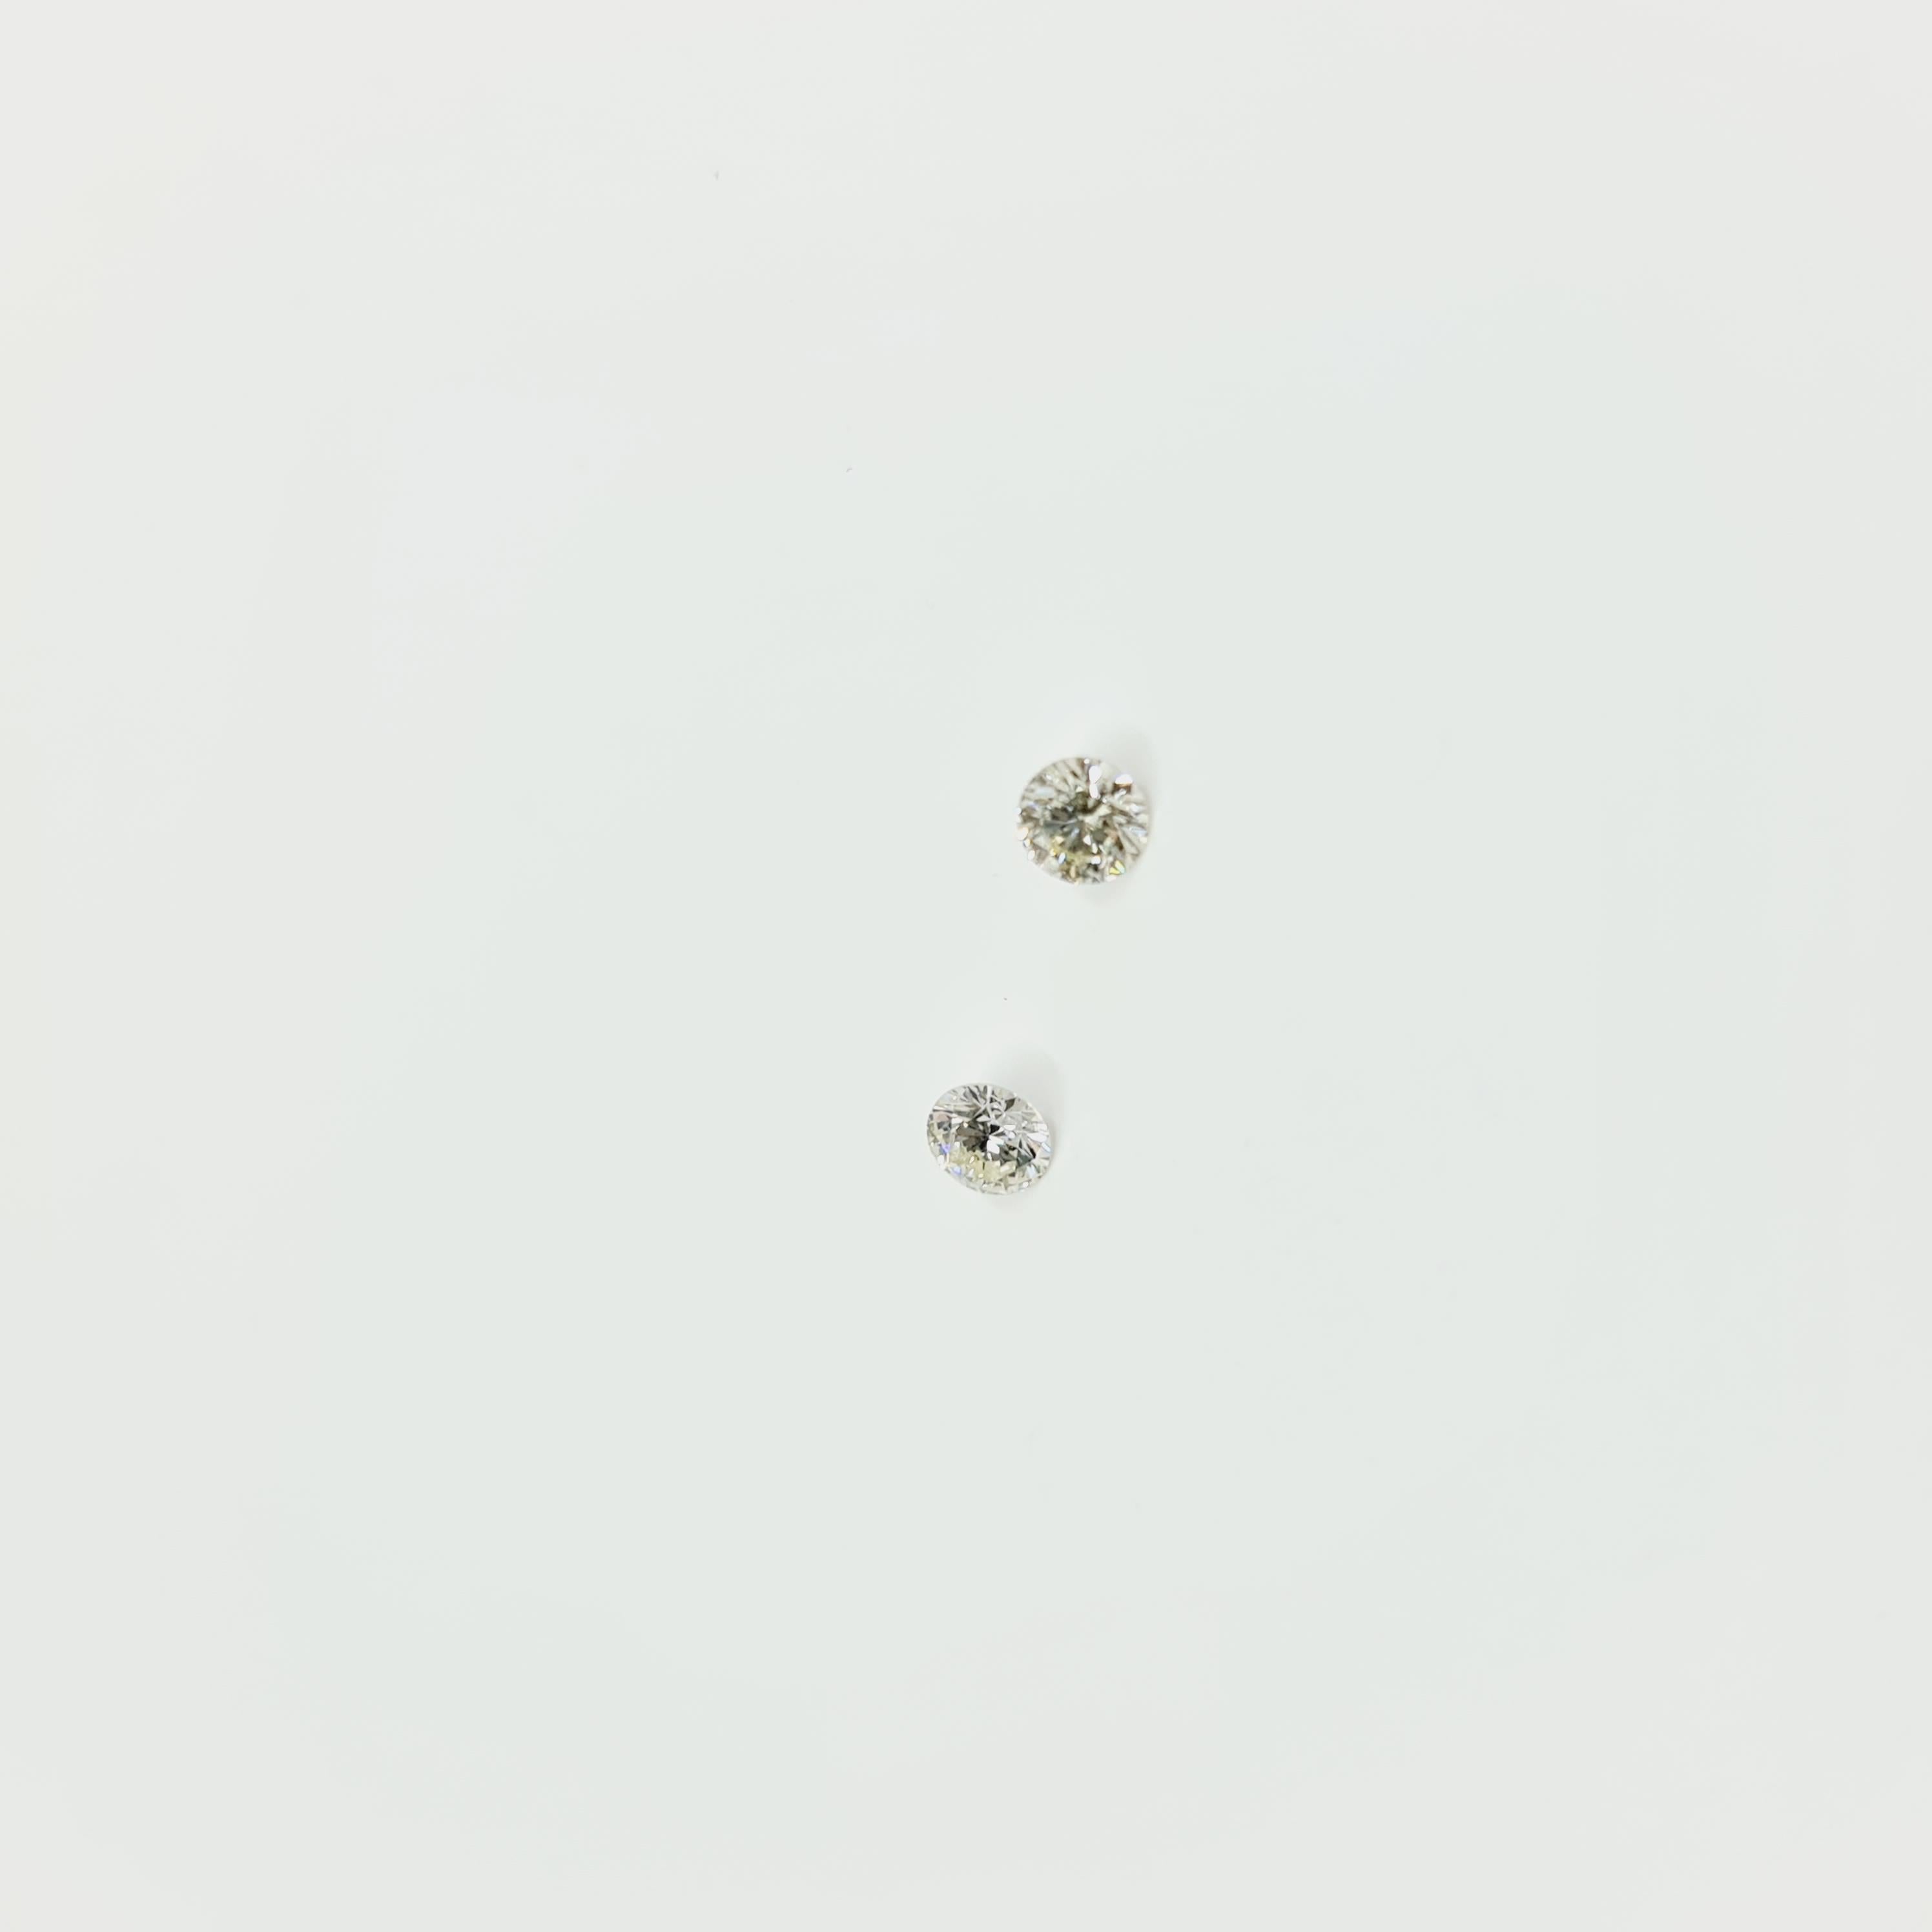 Taille brillant Diamant solitaire certifié GIA de 0,24 carat L/VS2, 0,24 carat O-P/SI1 en vente